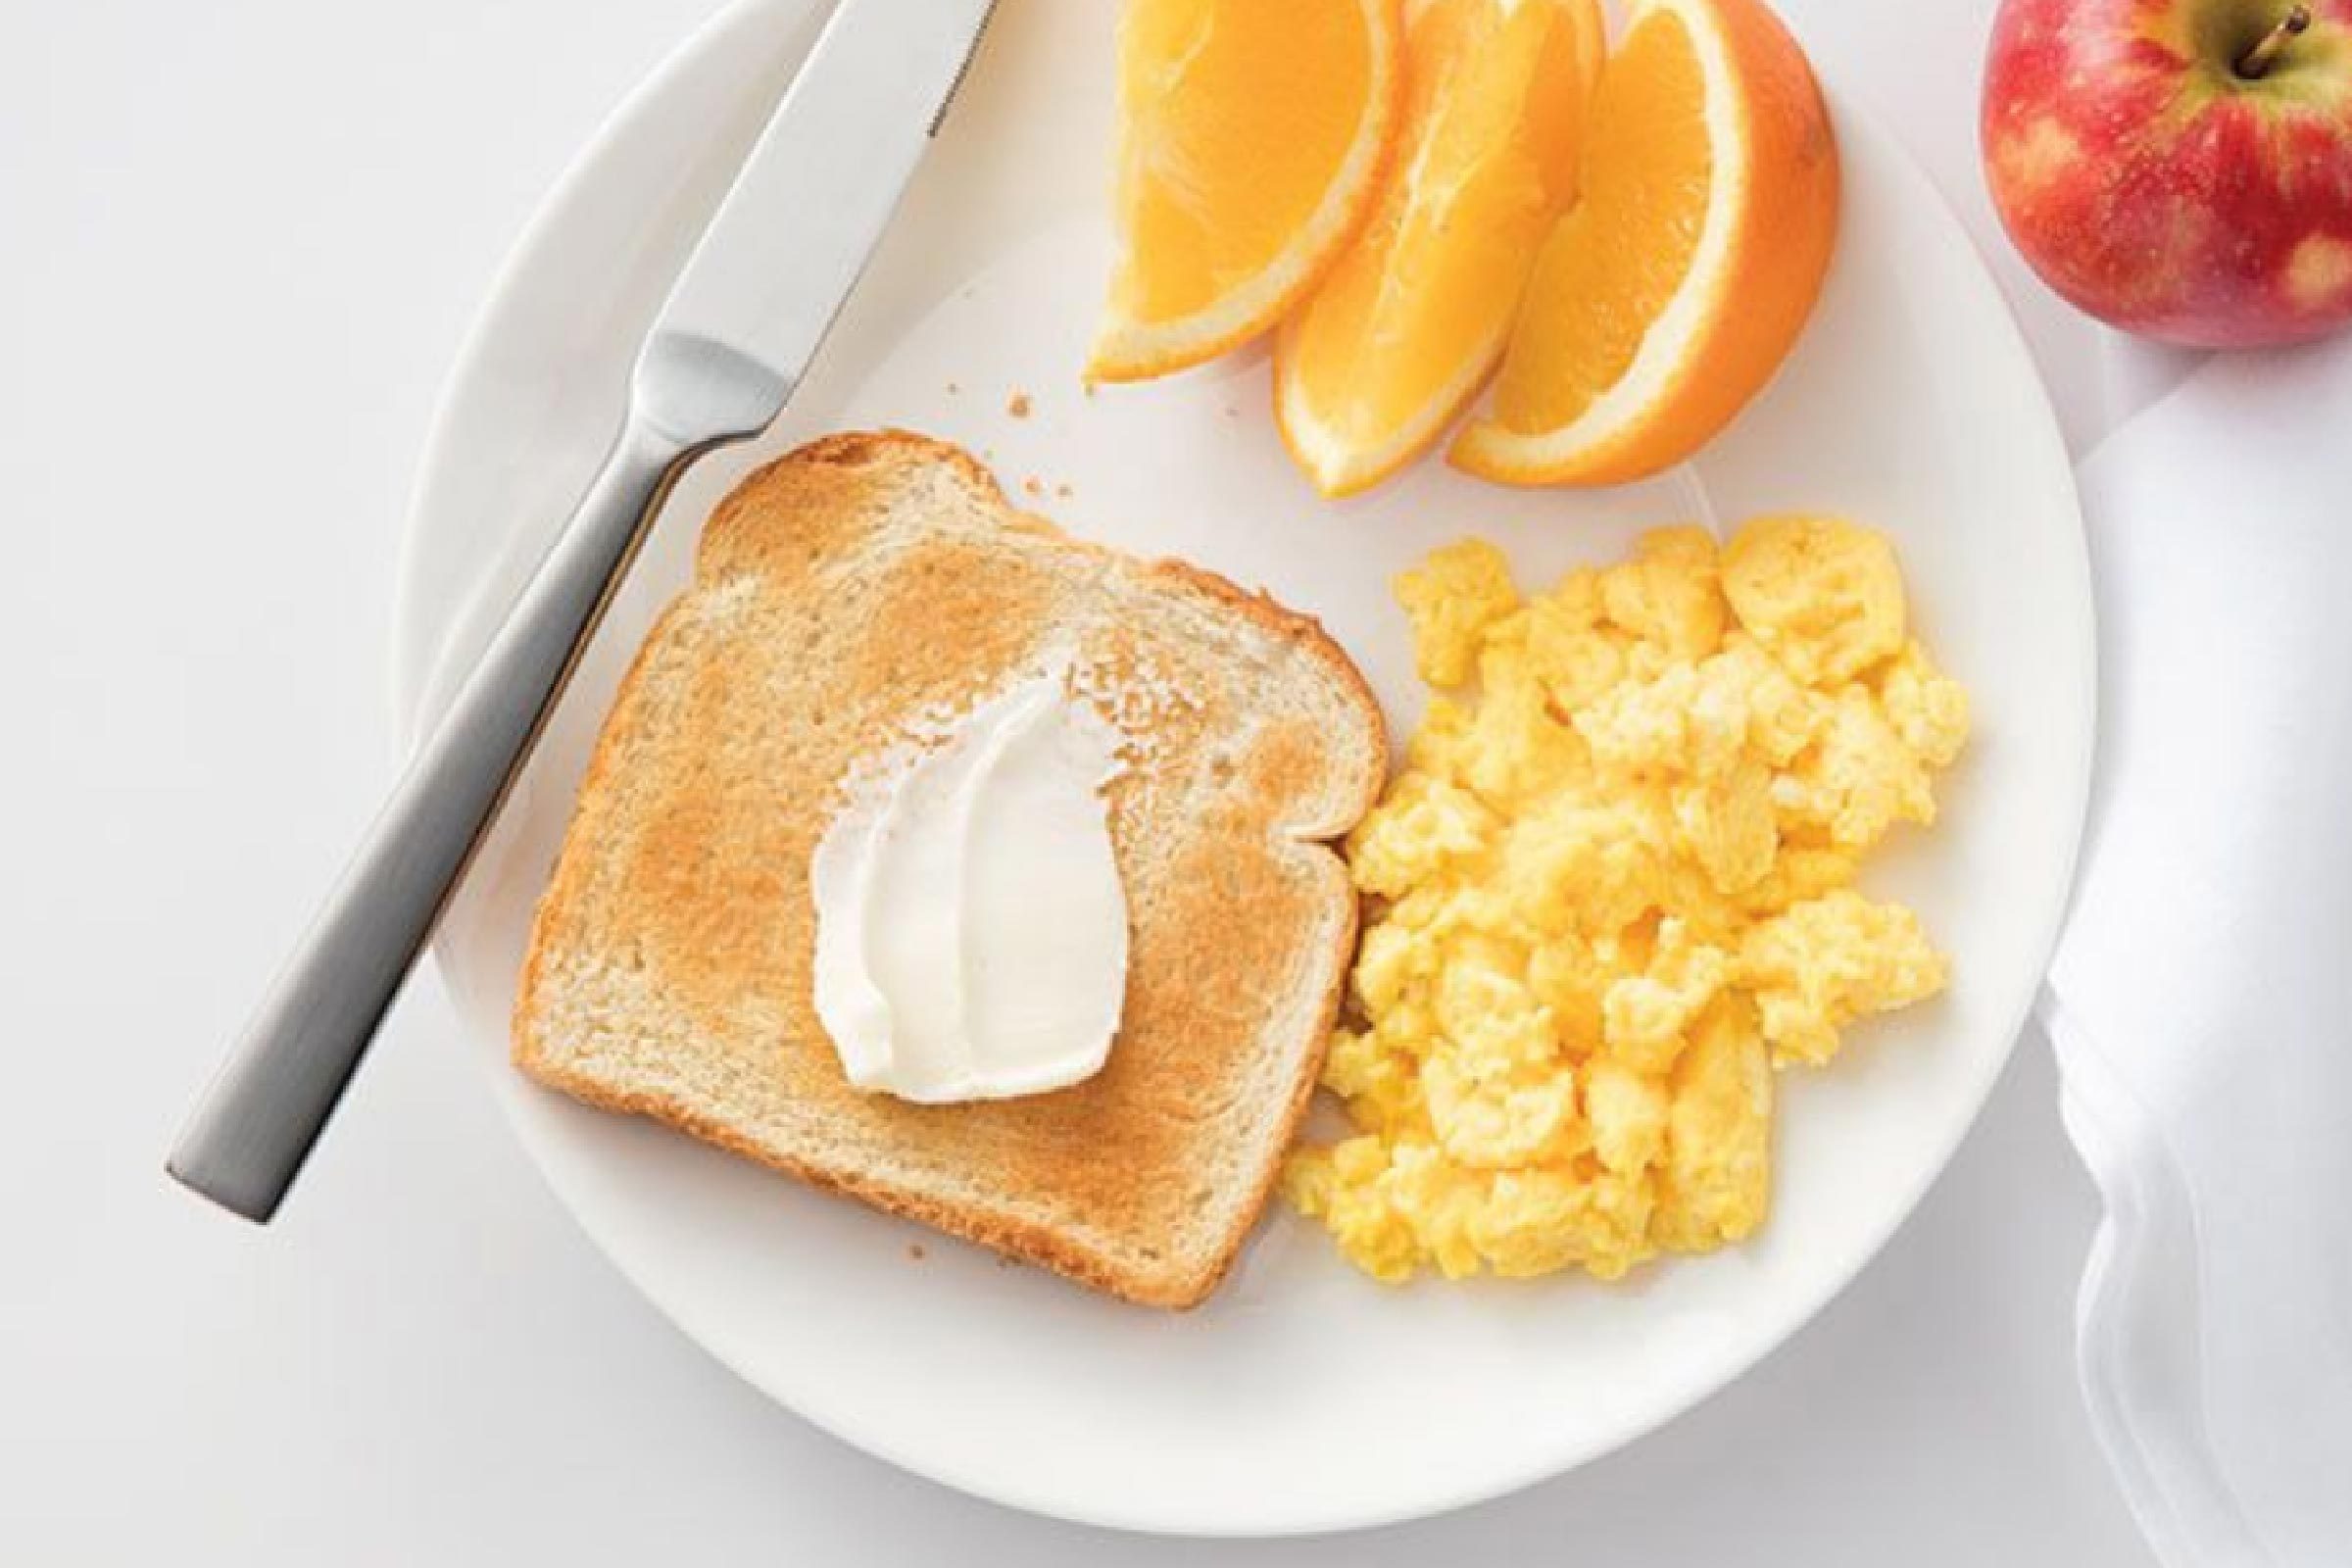 15 hoteles que ofrecen un desayuno caliente gratis 